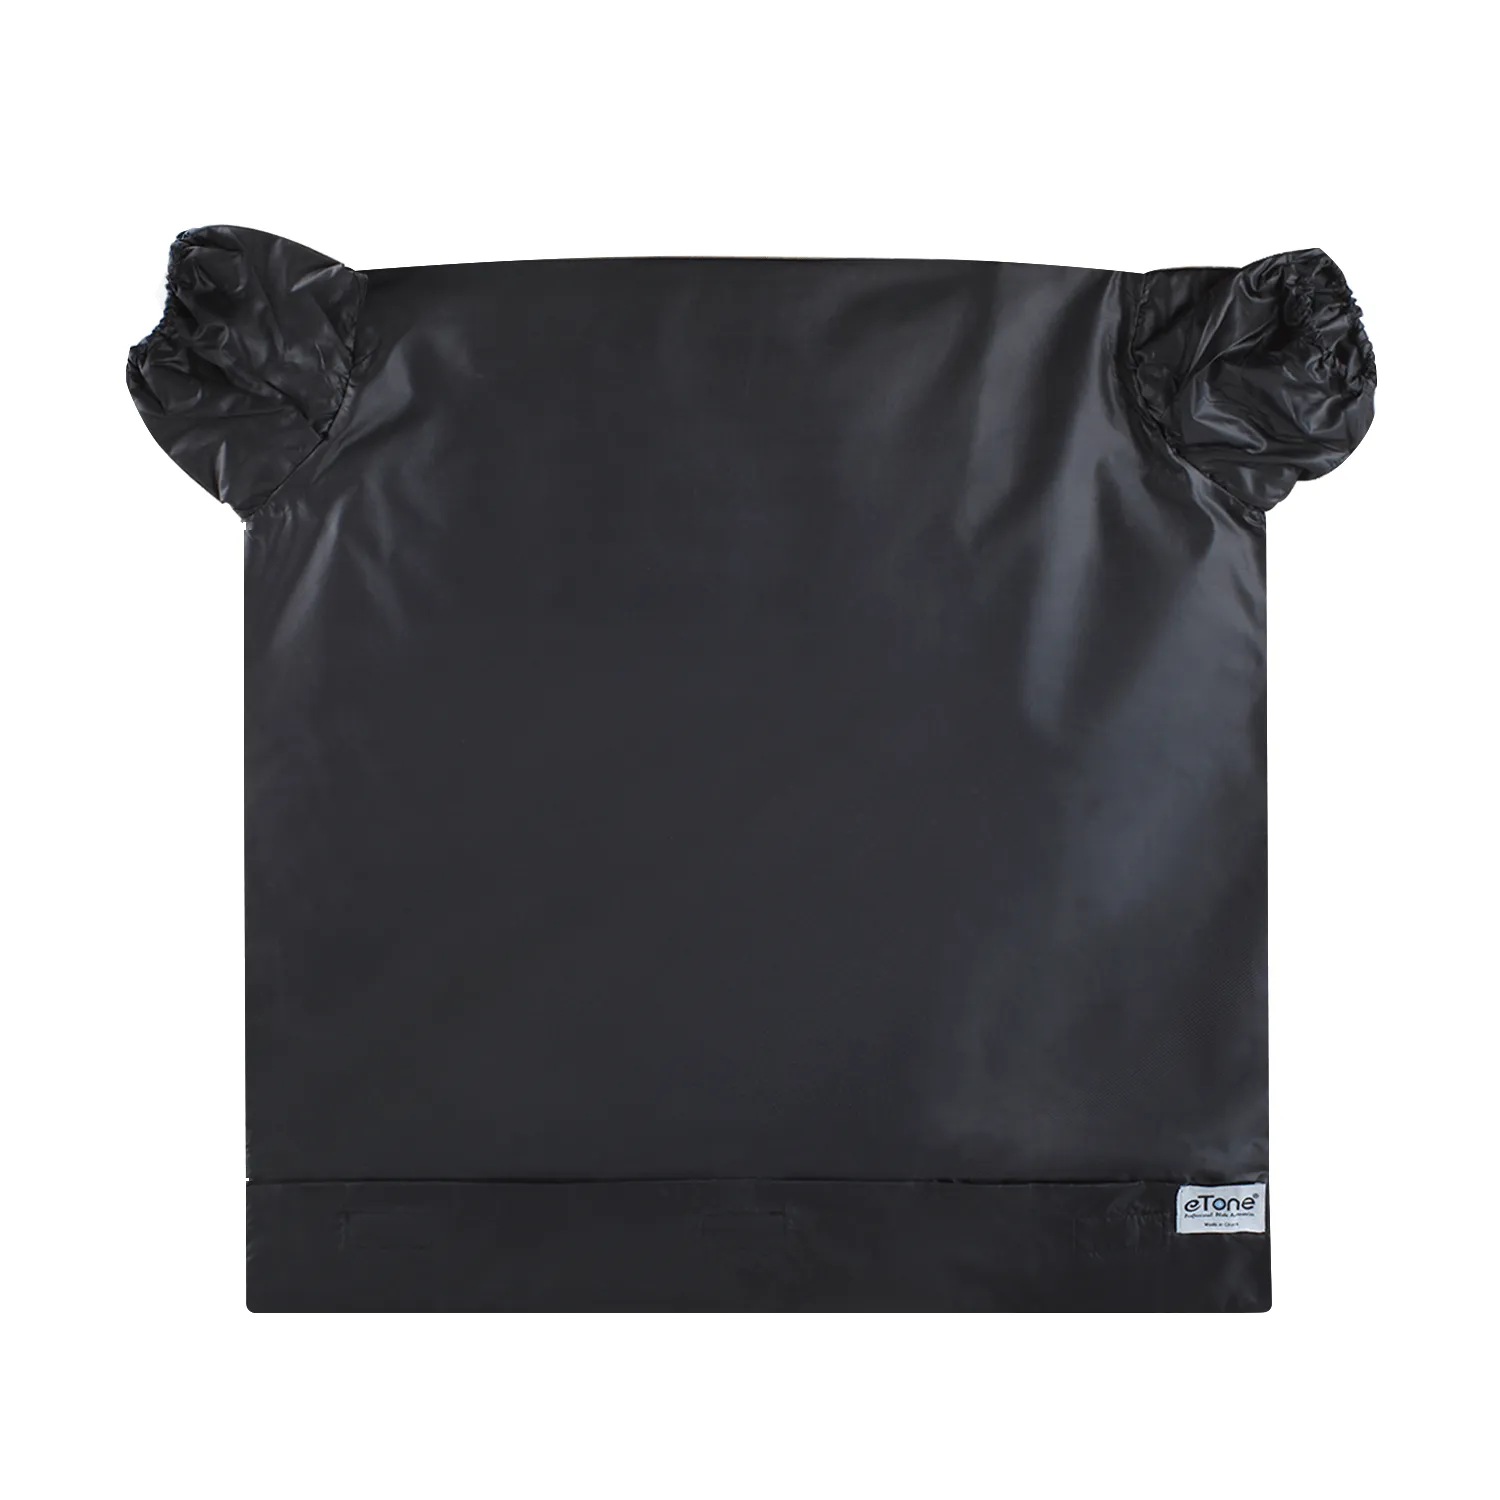 Dark Bags - Buy Dark Bags online in India